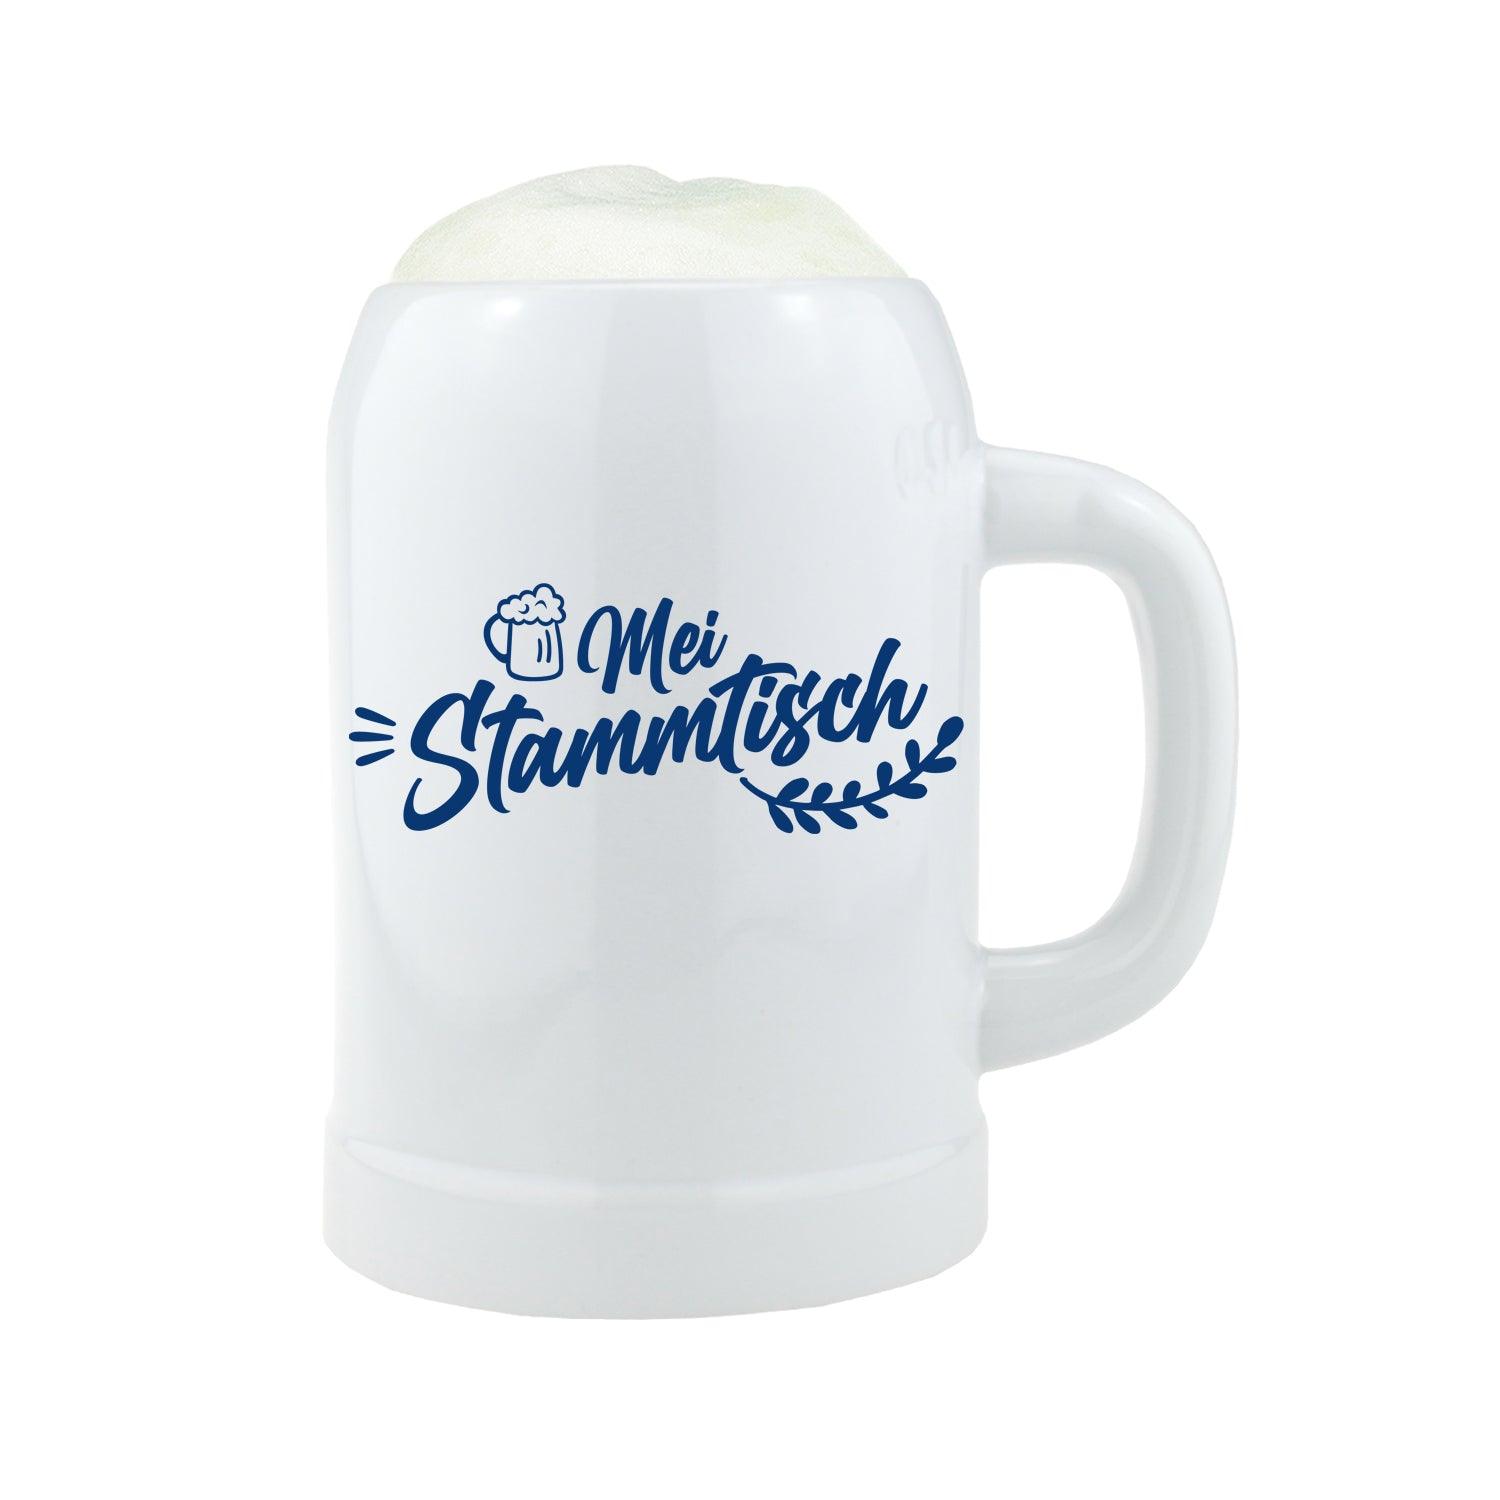 Bierkrug "Mei Stammtisch" mit Wunschname - bavariashop - mei LebensGfui